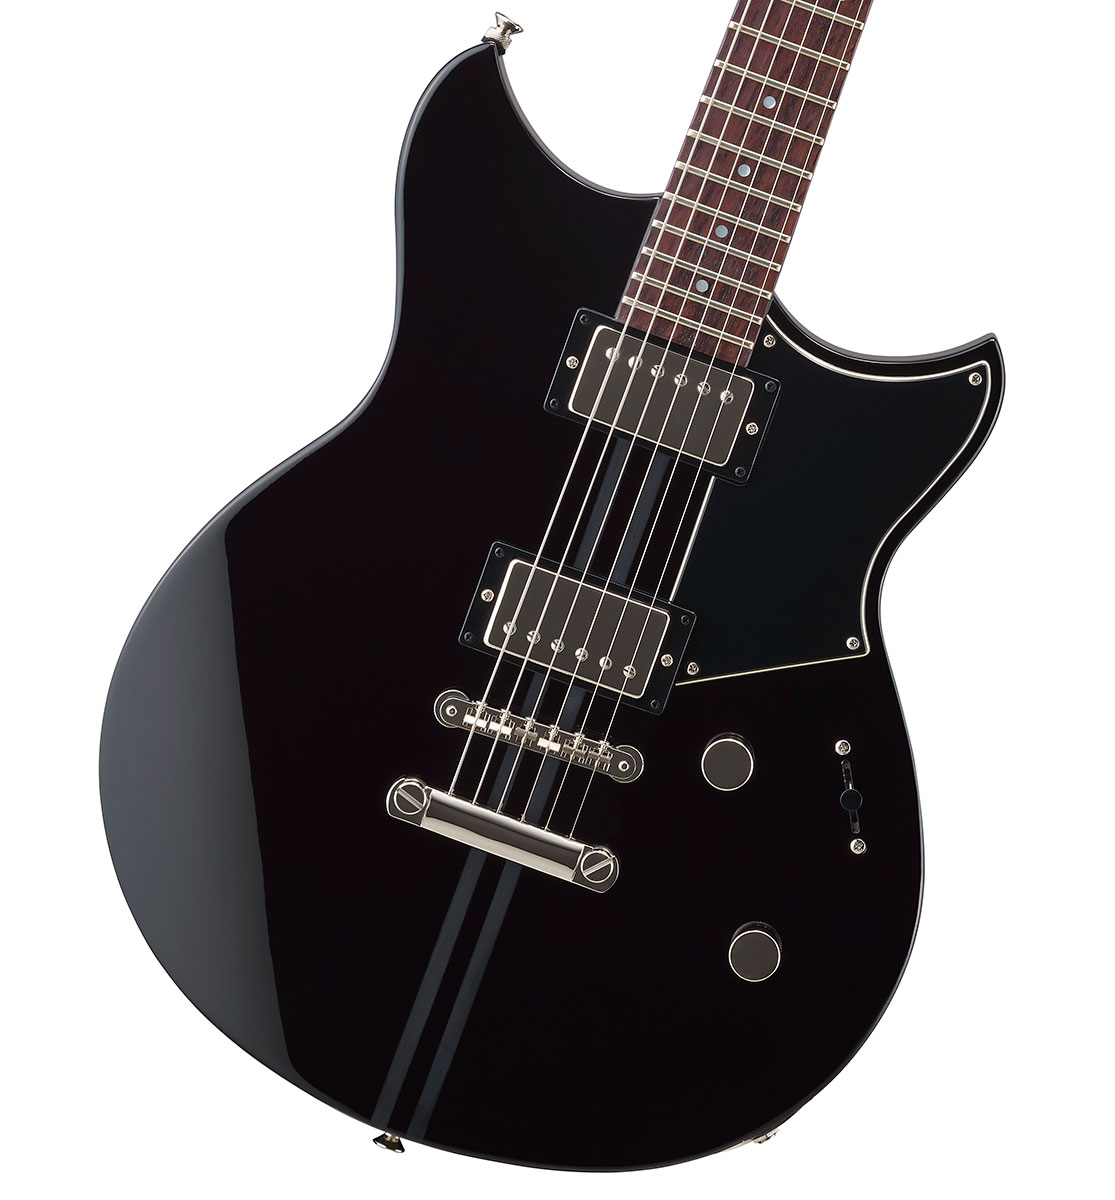 YAMAHA / REVSTAR RSE20 ブラック (BL) ヤマハ エレキギター